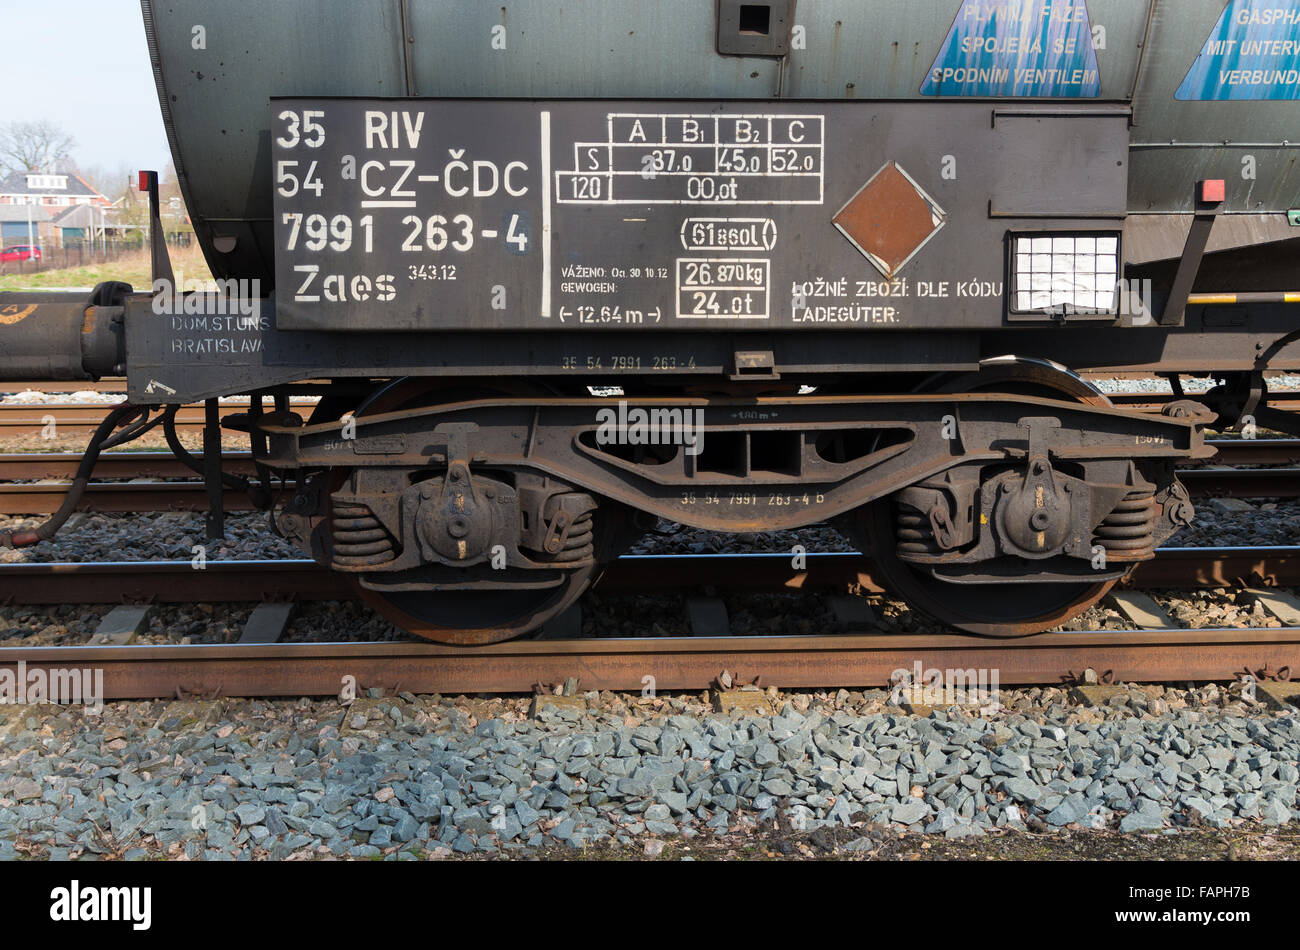 OLDENZAAL, Pays-Bas - le 23 mars 2015 : les roues d'un wagon de train de marchandises en attente sur l'Oldenzaal gare Banque D'Images